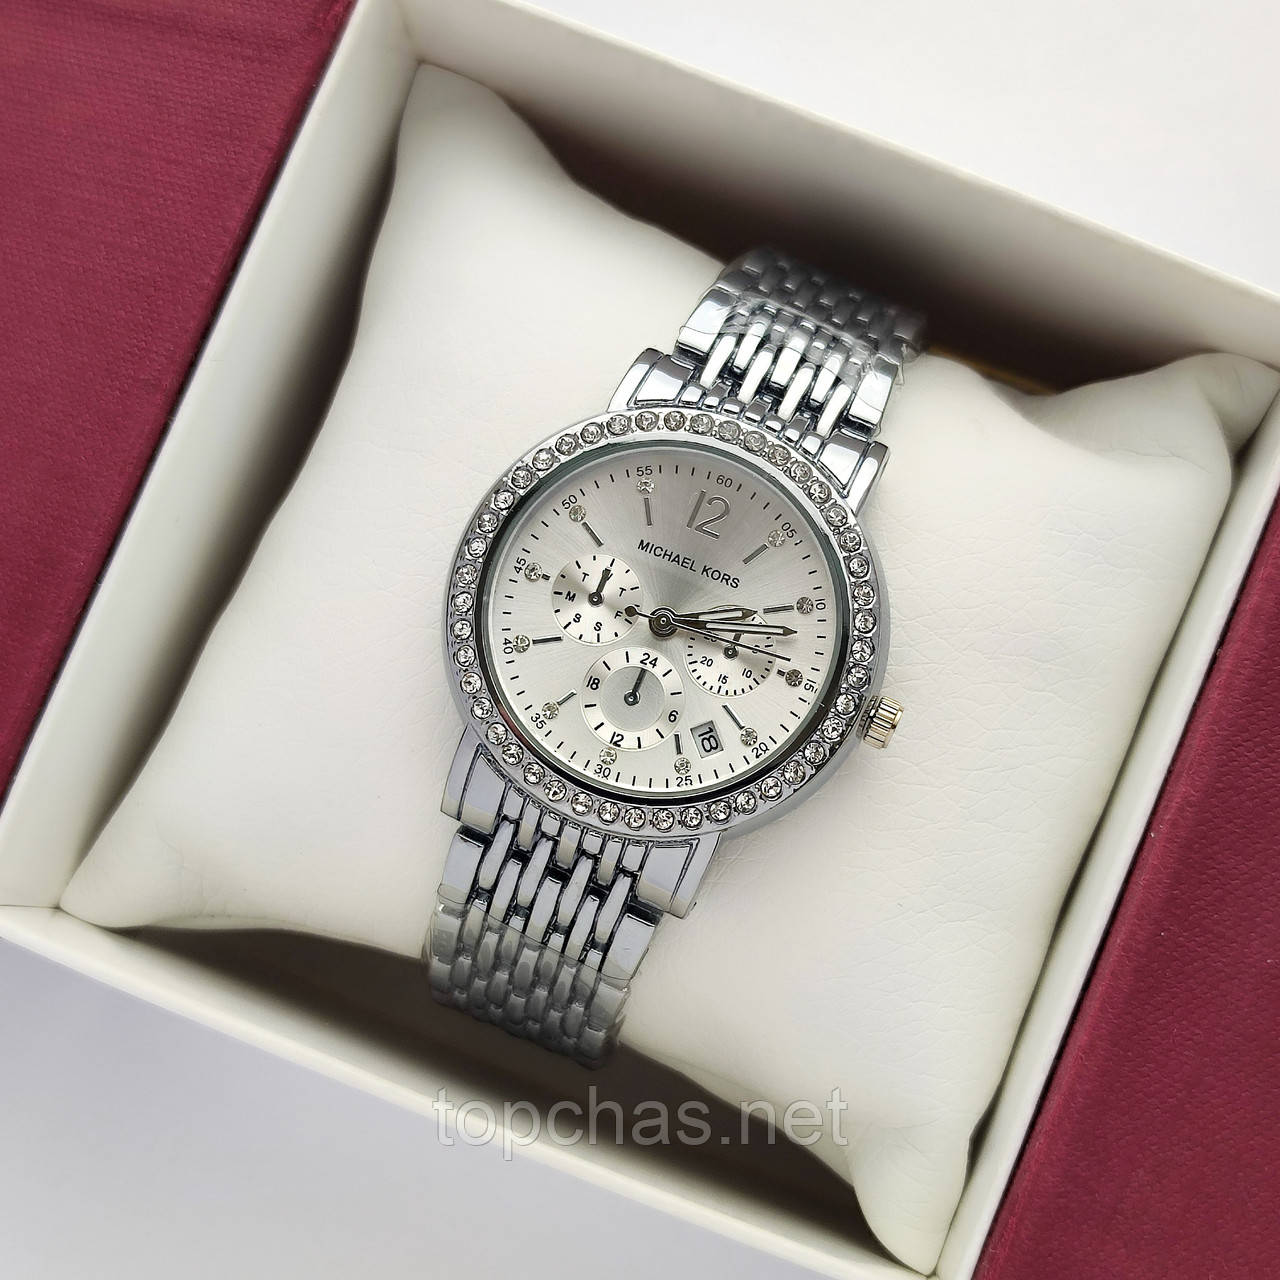 Невеликий жіночий наручний годинник Michael Kors (майкл корс) срібло з світлим циферблатом, камінчики - код 2384b